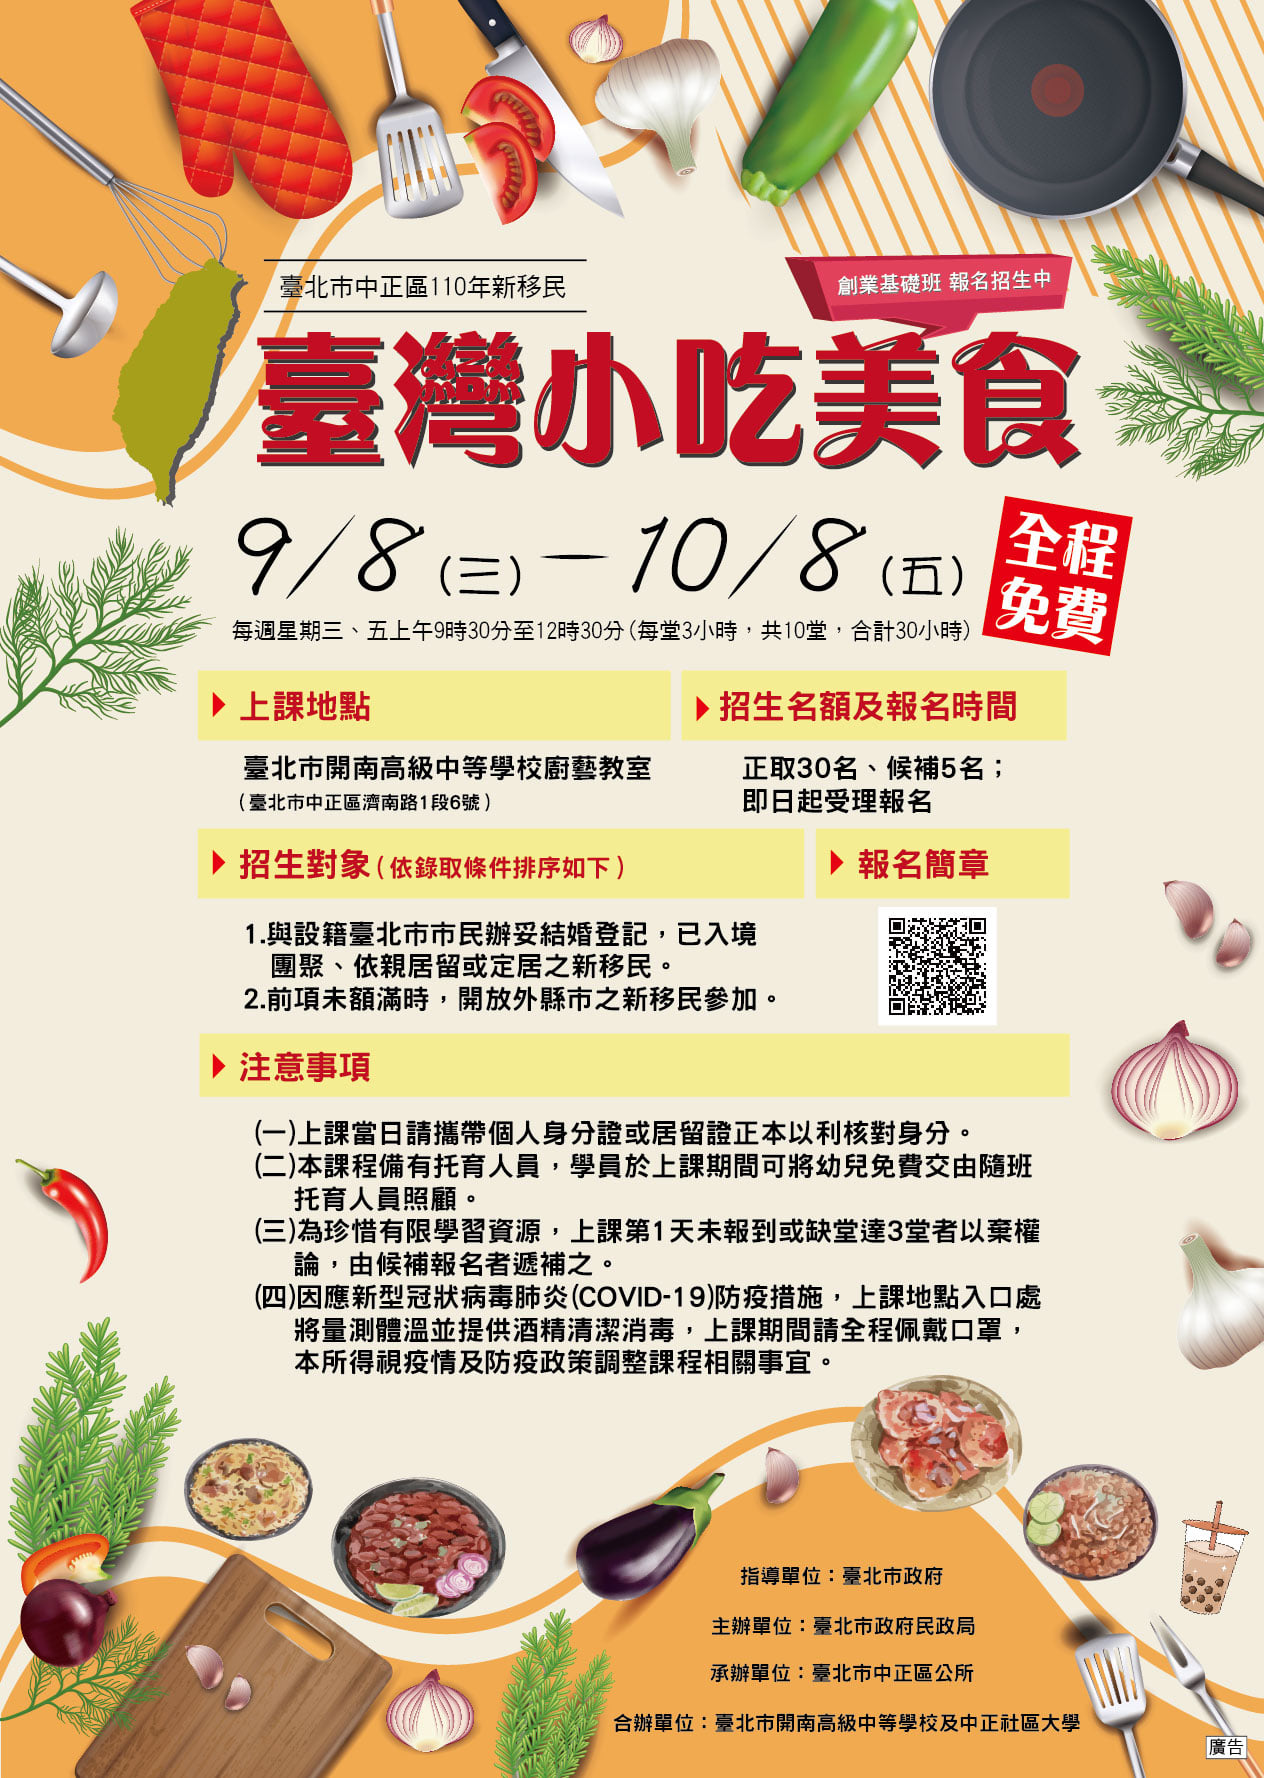 Brosur kegiatan "Kelas Dasar Camilan Taiwan dan Kewirausahaan Makanan untuk Penduduk Baru". Sumber: Diambil dari Pemerintah Kota Taipei